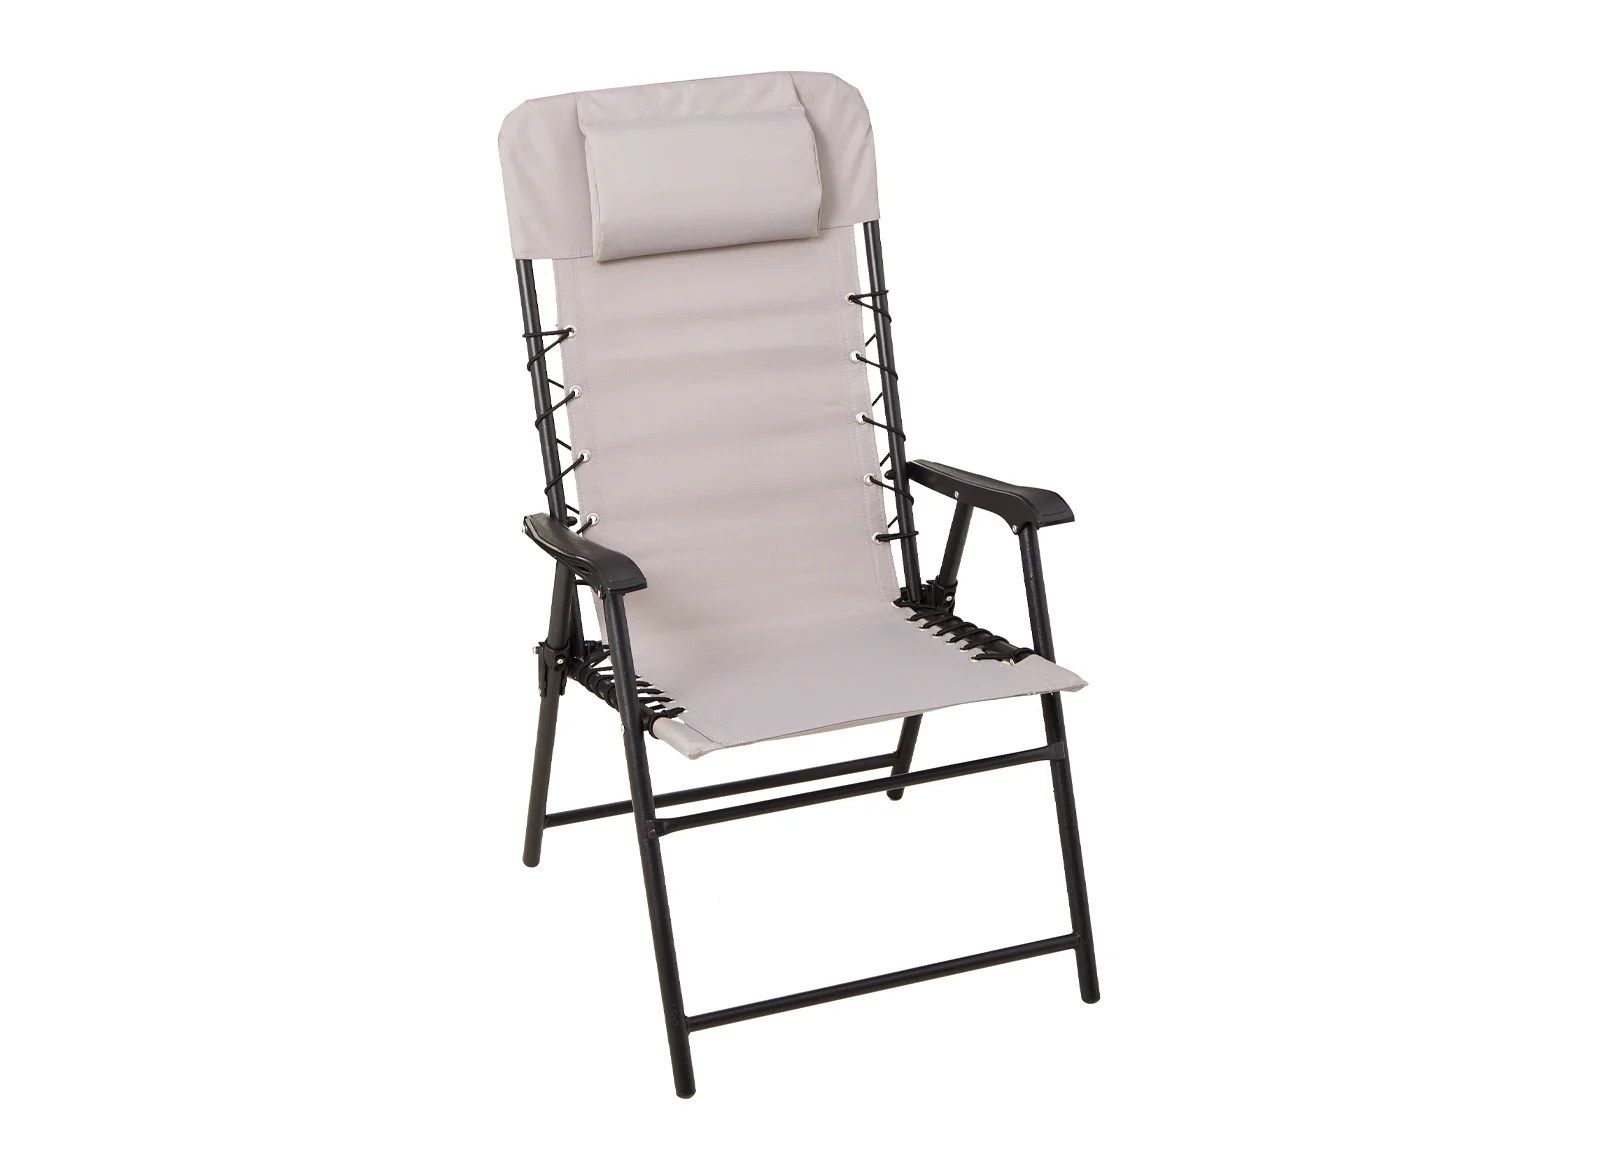 A patio chair